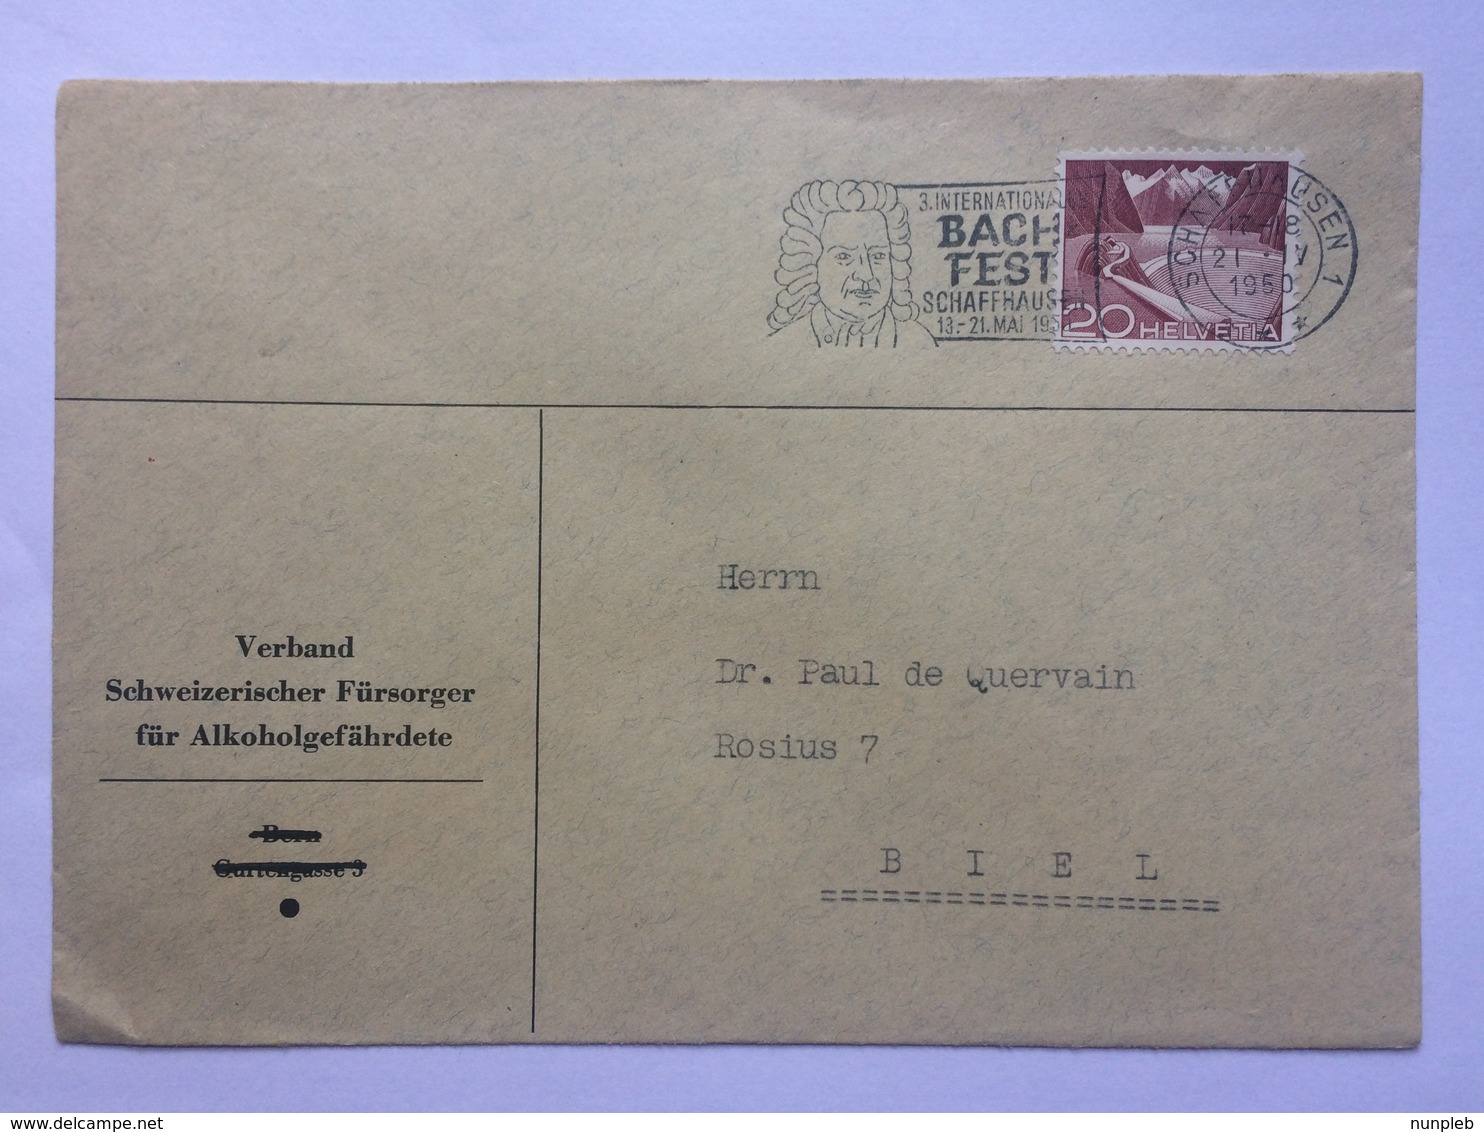 SWITZERLAND 1950 Cover Schaffhausen To Biel With Bach Fest Slogan Postmark Schaffhausen - Covers & Documents